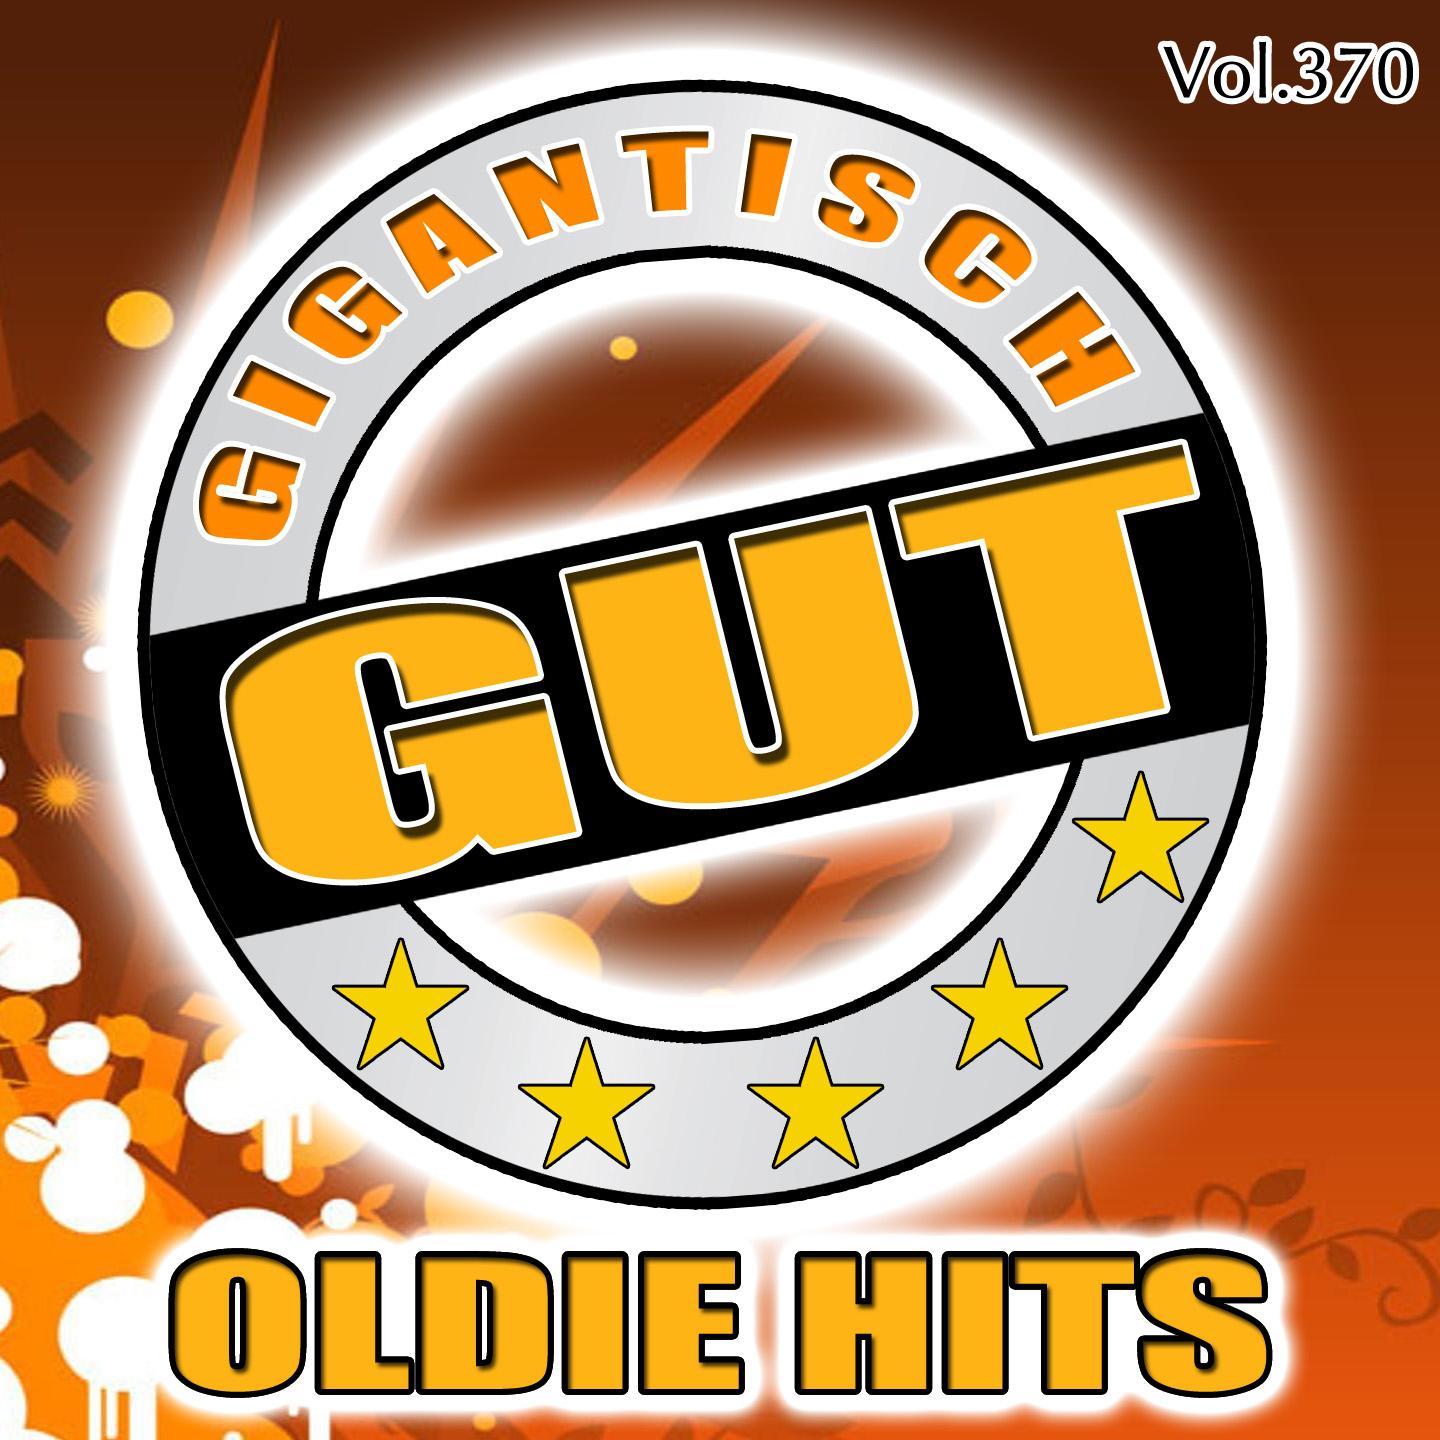 Gigantisch Gut: Oldie Hits, Vol. 370